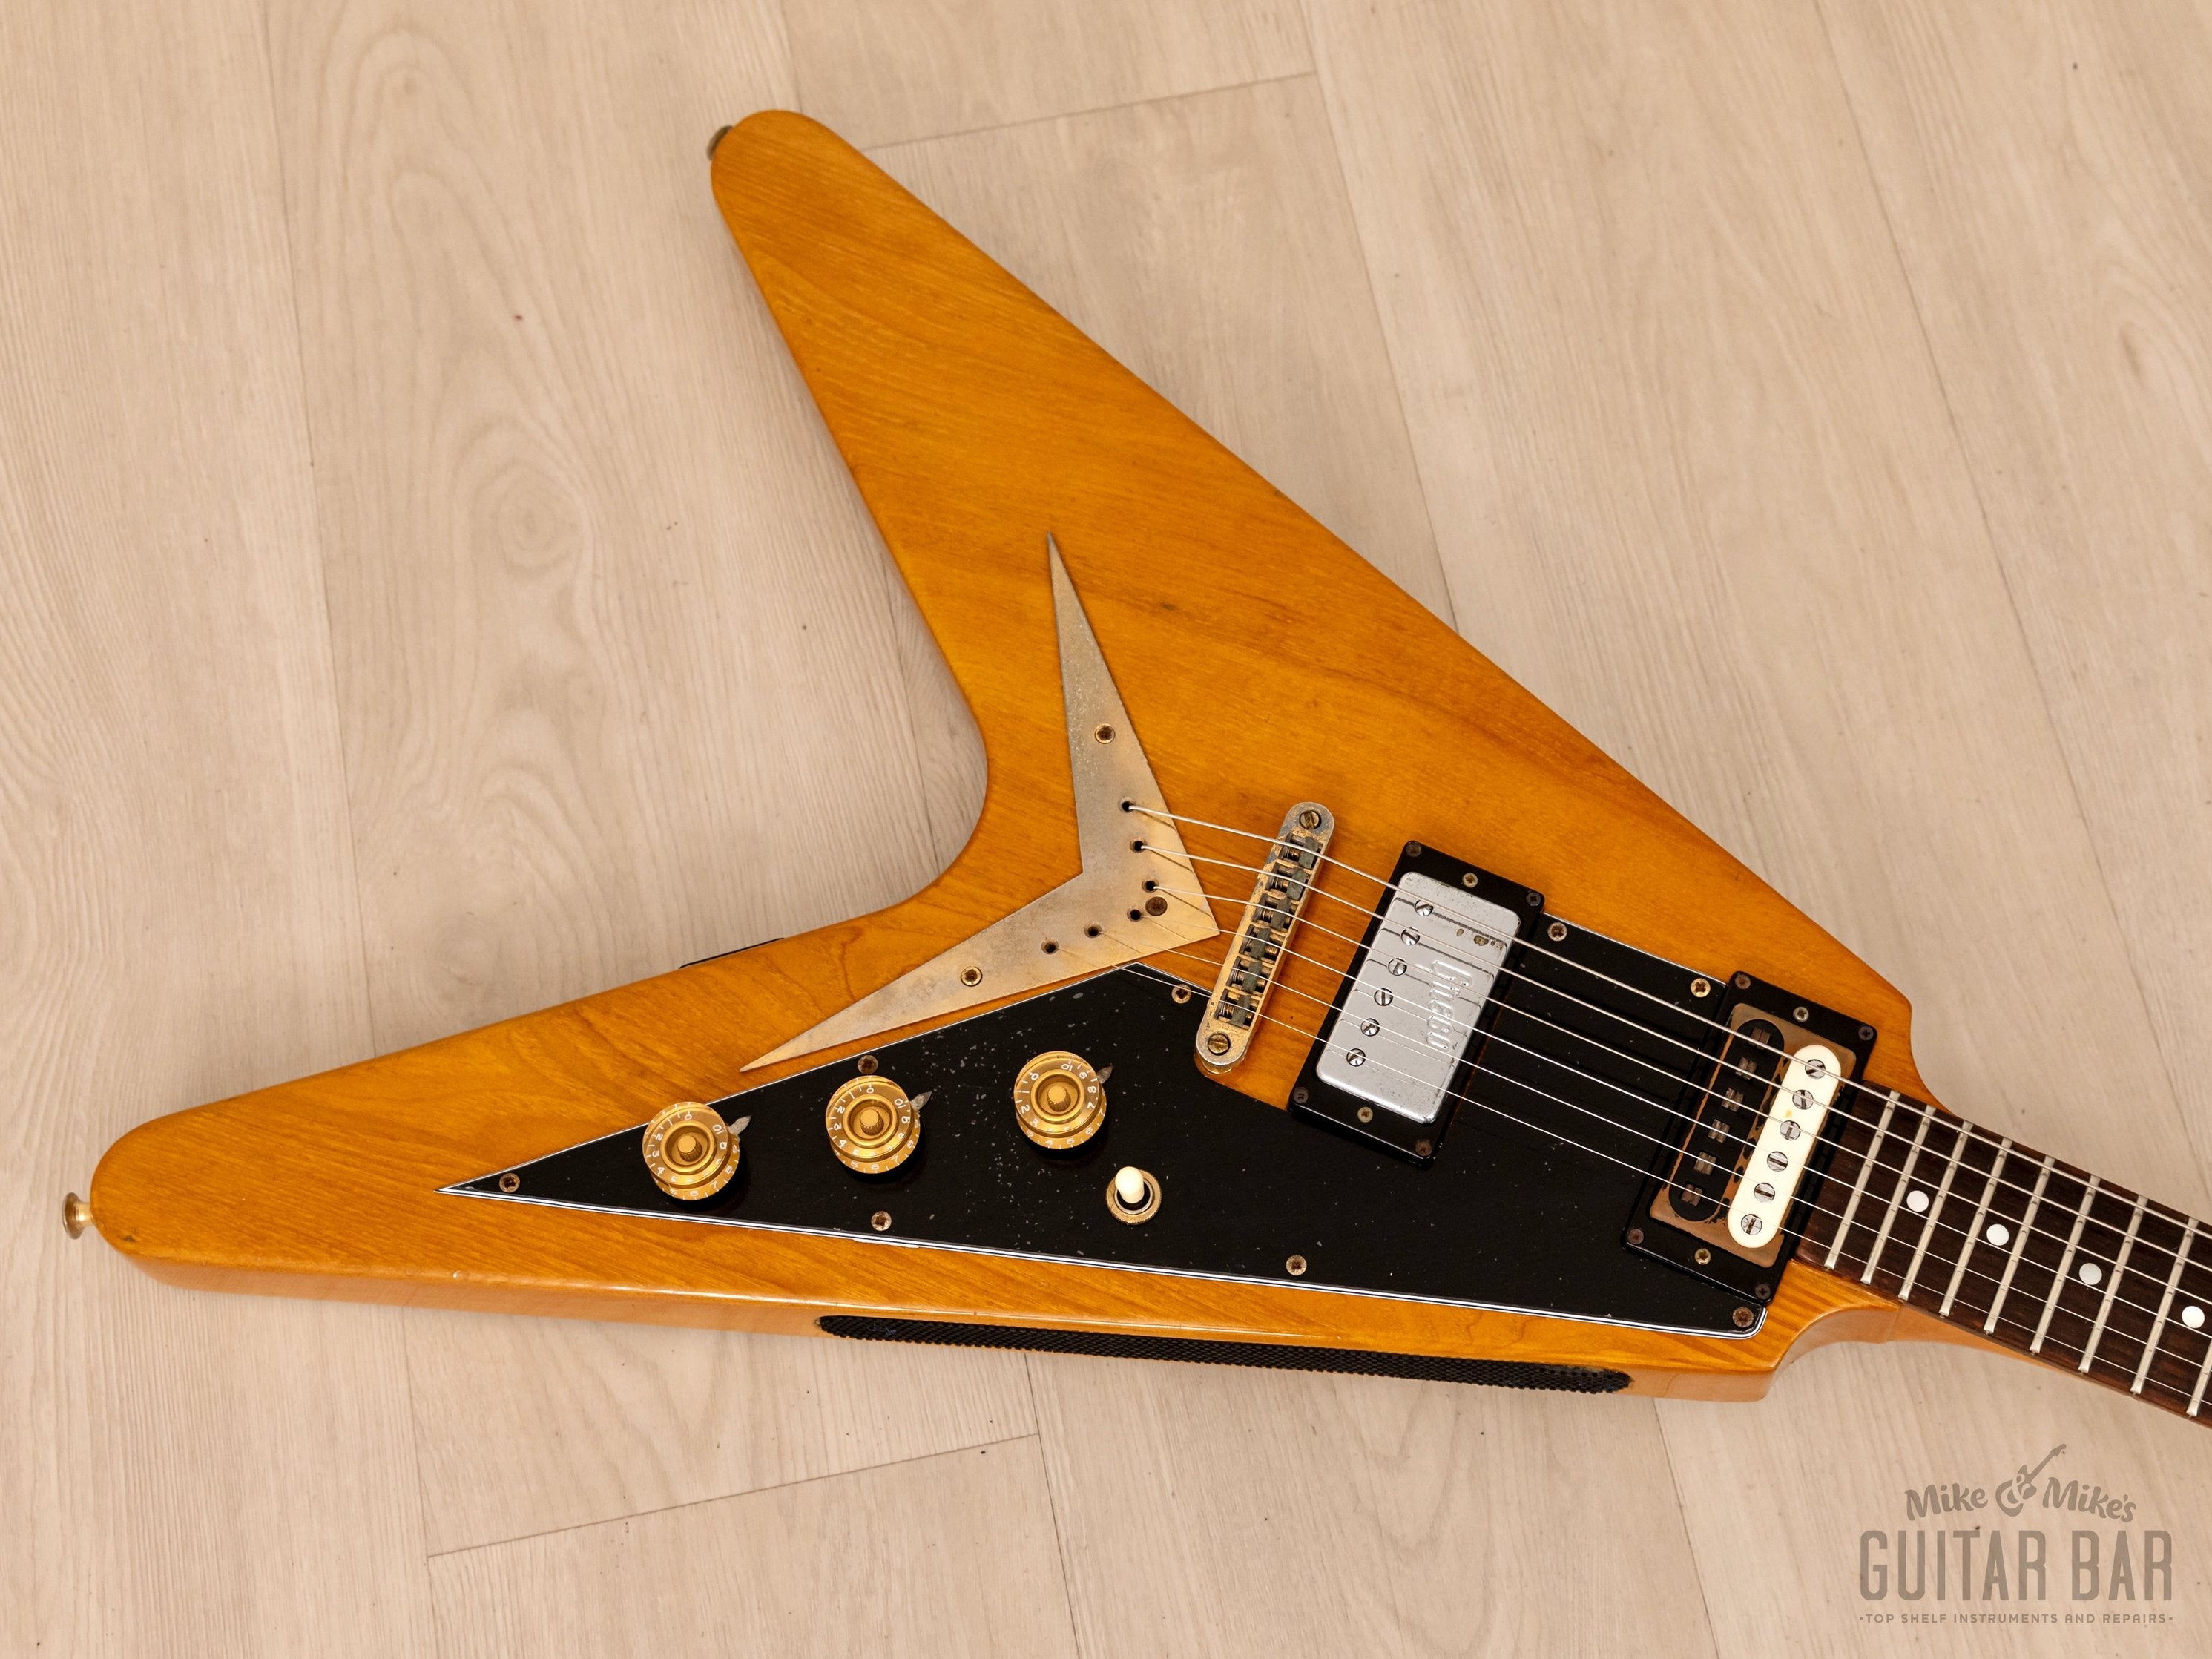 1978 Greco FV-900 Flying V Vintage Guitar Natural w/ Case, Japan Fujigen, Rocket Roll Sr